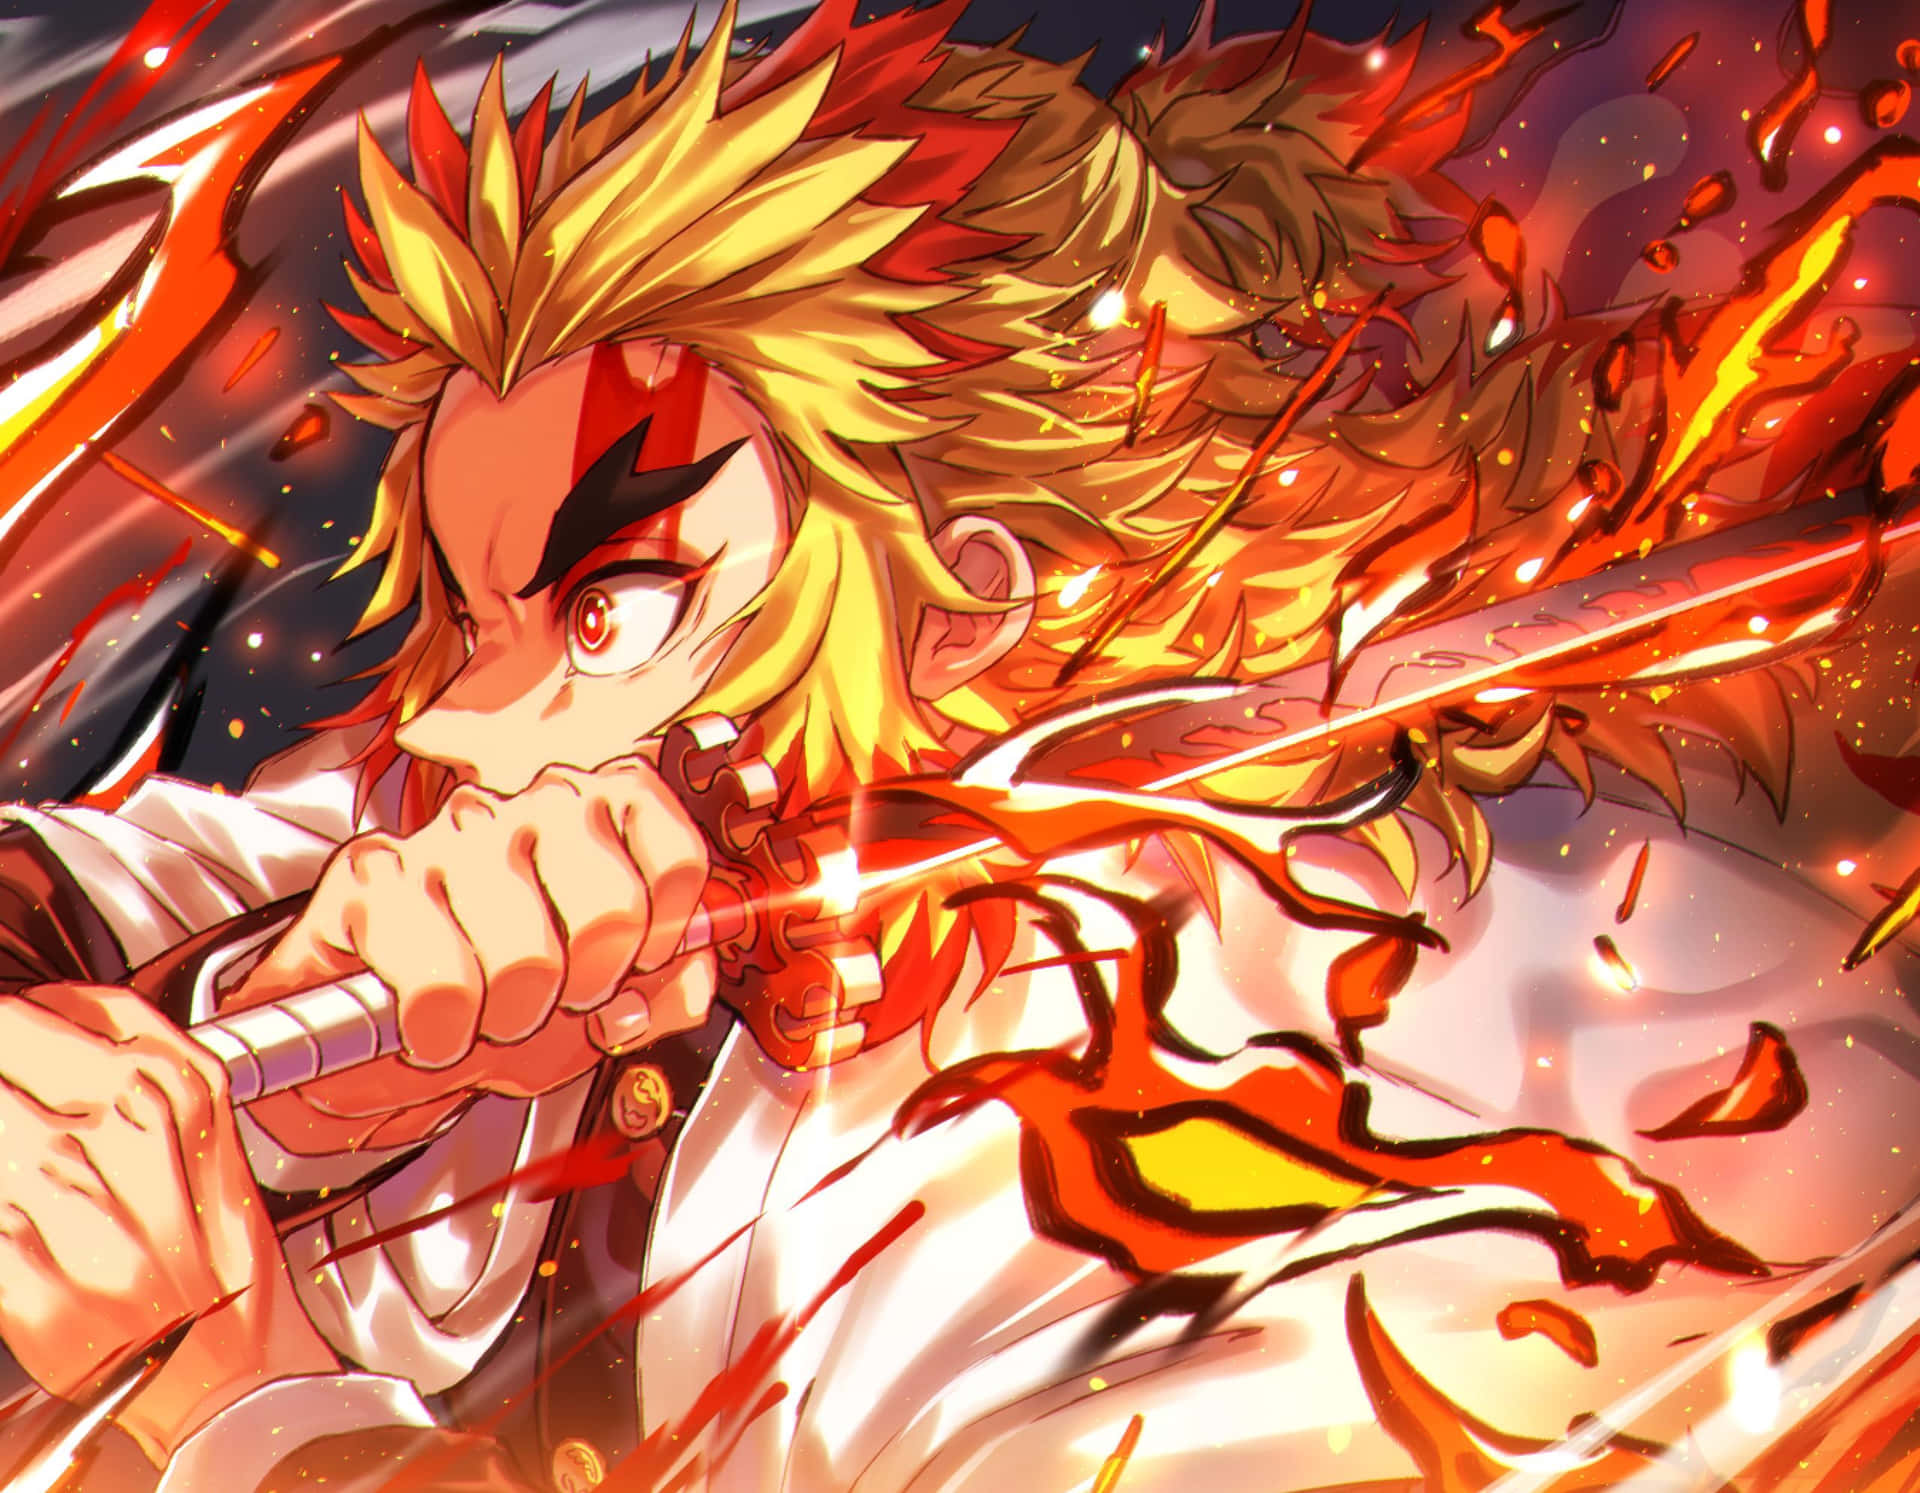 Rengoku's Fiery Sword in Action Wallpaper